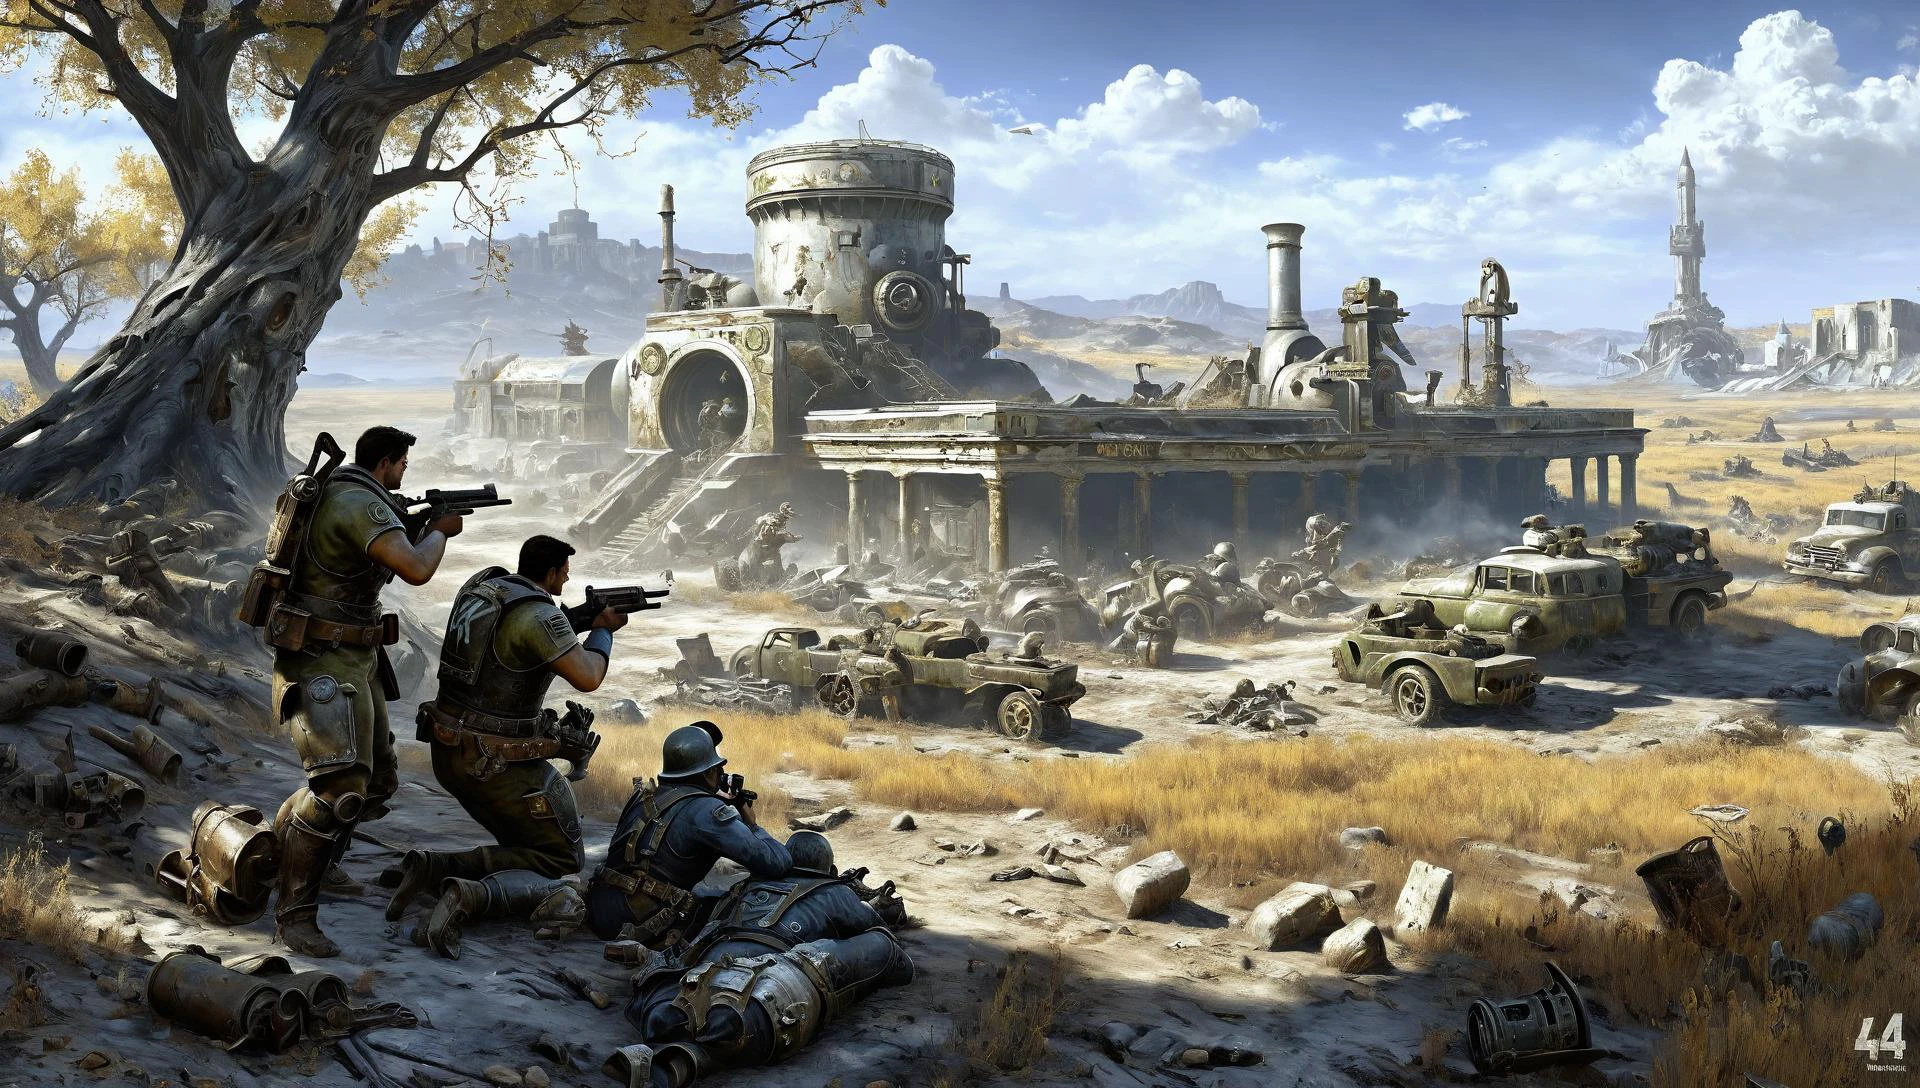 ภาพวาดสงคราม Fallout4 ที่มีรายละเอียดในอเมริกา , รูปแบบของตำนานทางวิชาการโบราณโดย Henryk Siemiradzki, 